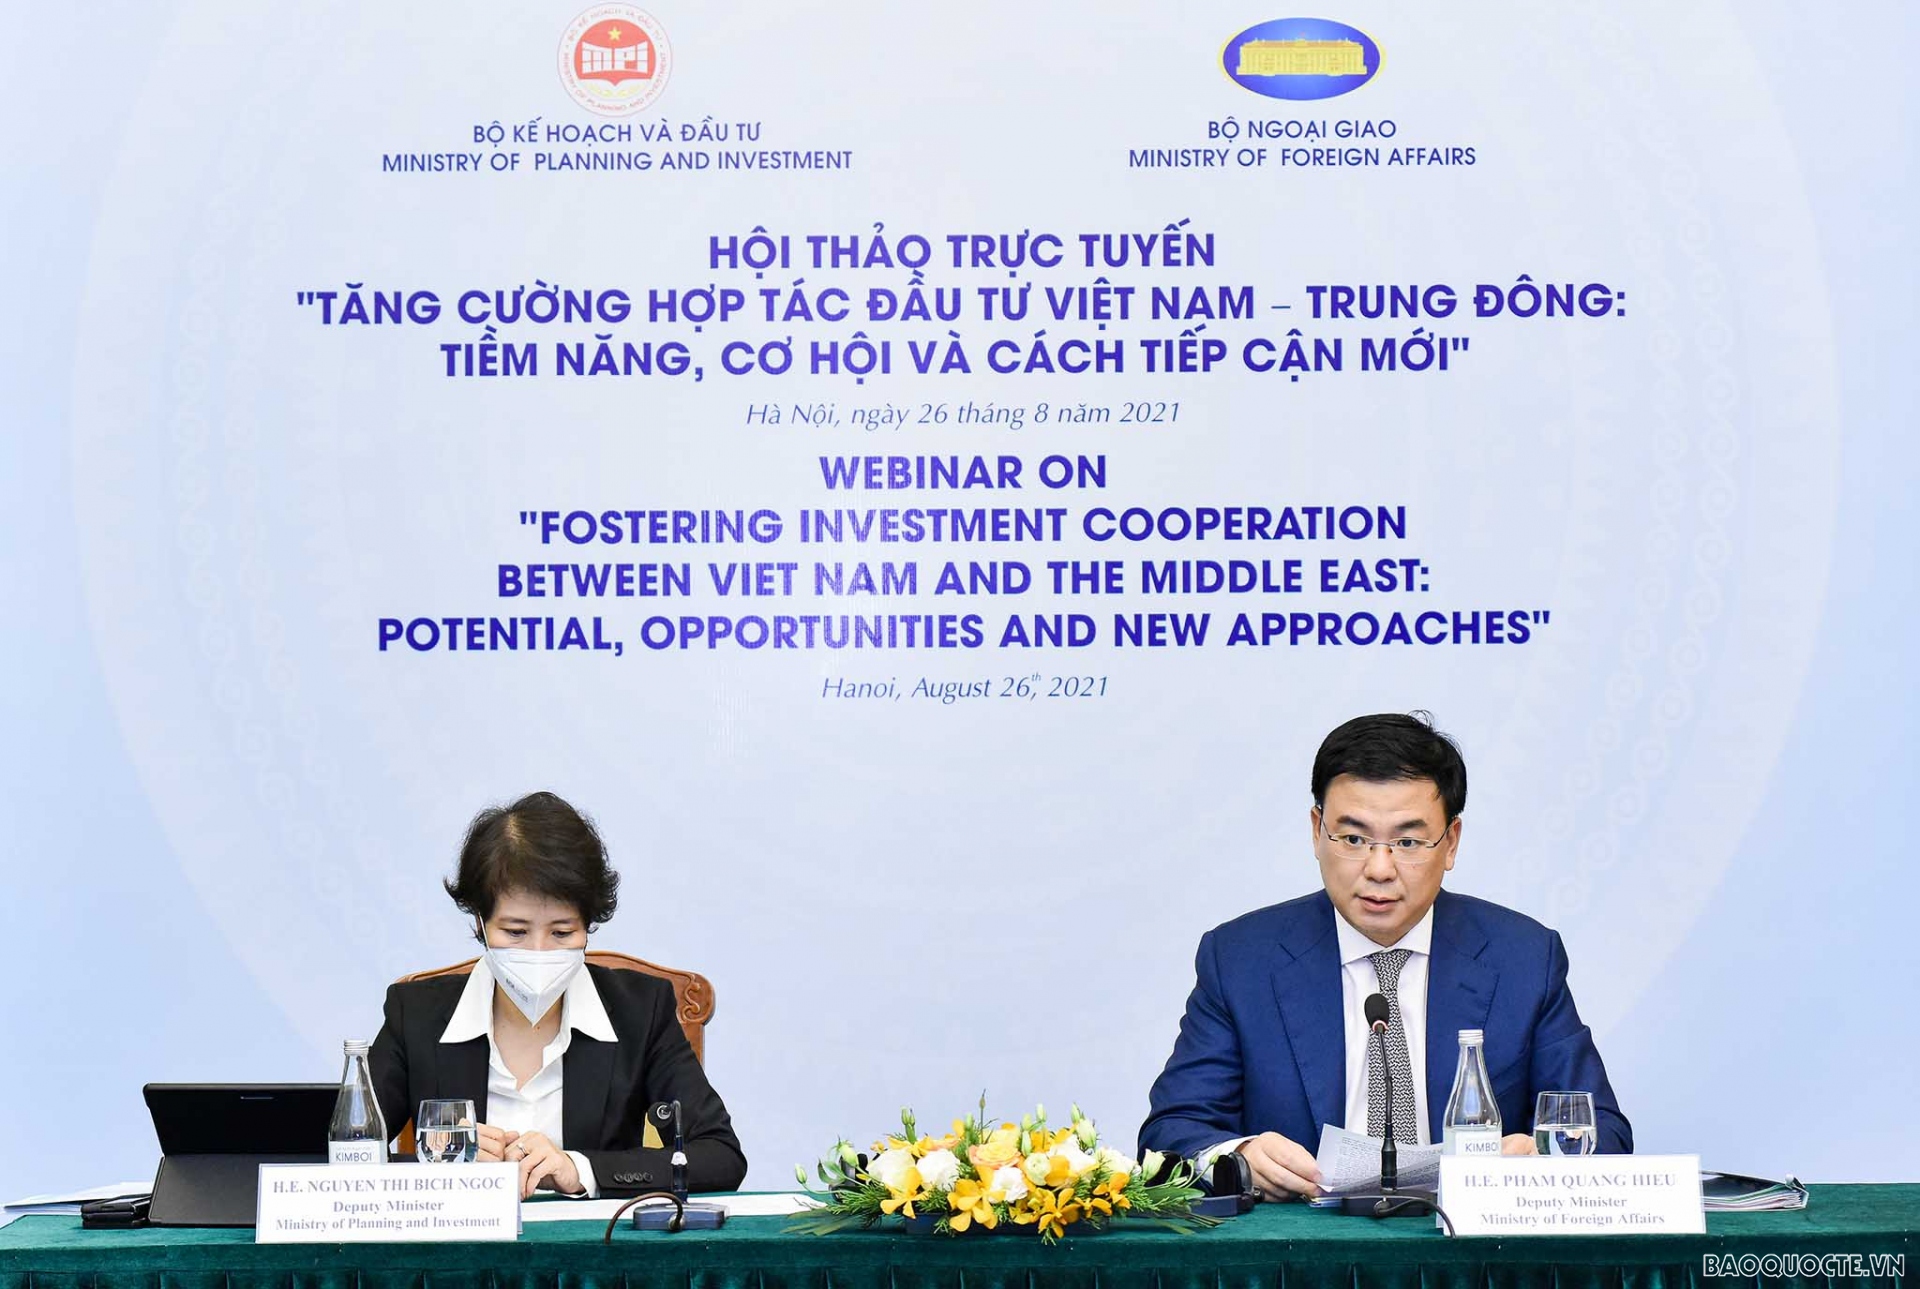 Thứ trưởng Bộ Ngoại giao Phạm Quang Hiệu và Thứ trưởng Bộ Kế hoạch và Đầu tư Nguyễn Thị Bích Ngọc đã tham dự